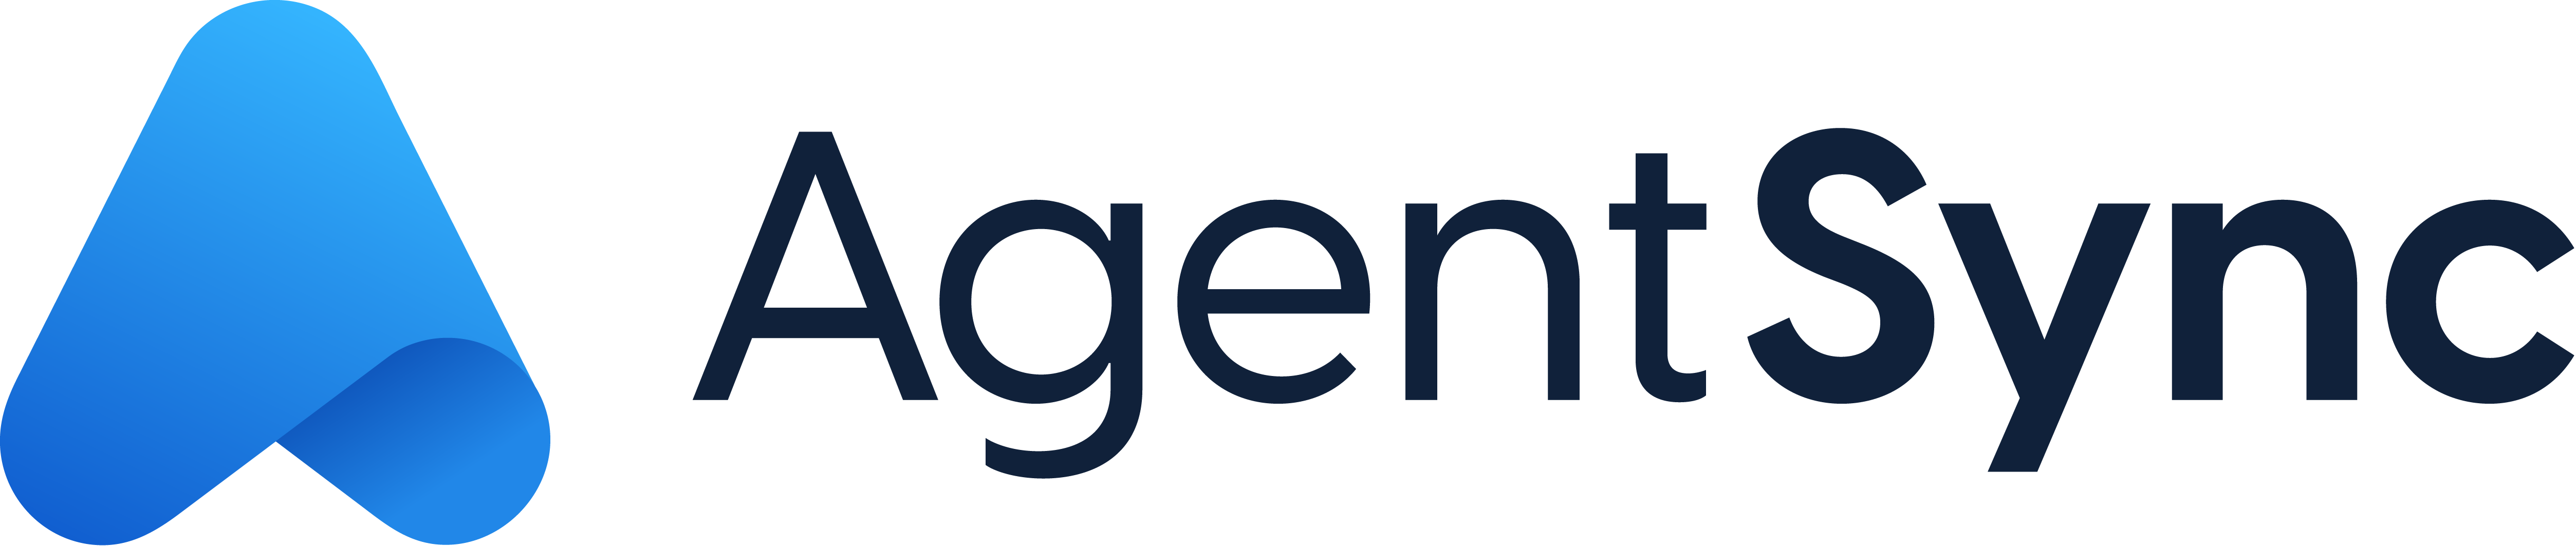 AgentSync Logo